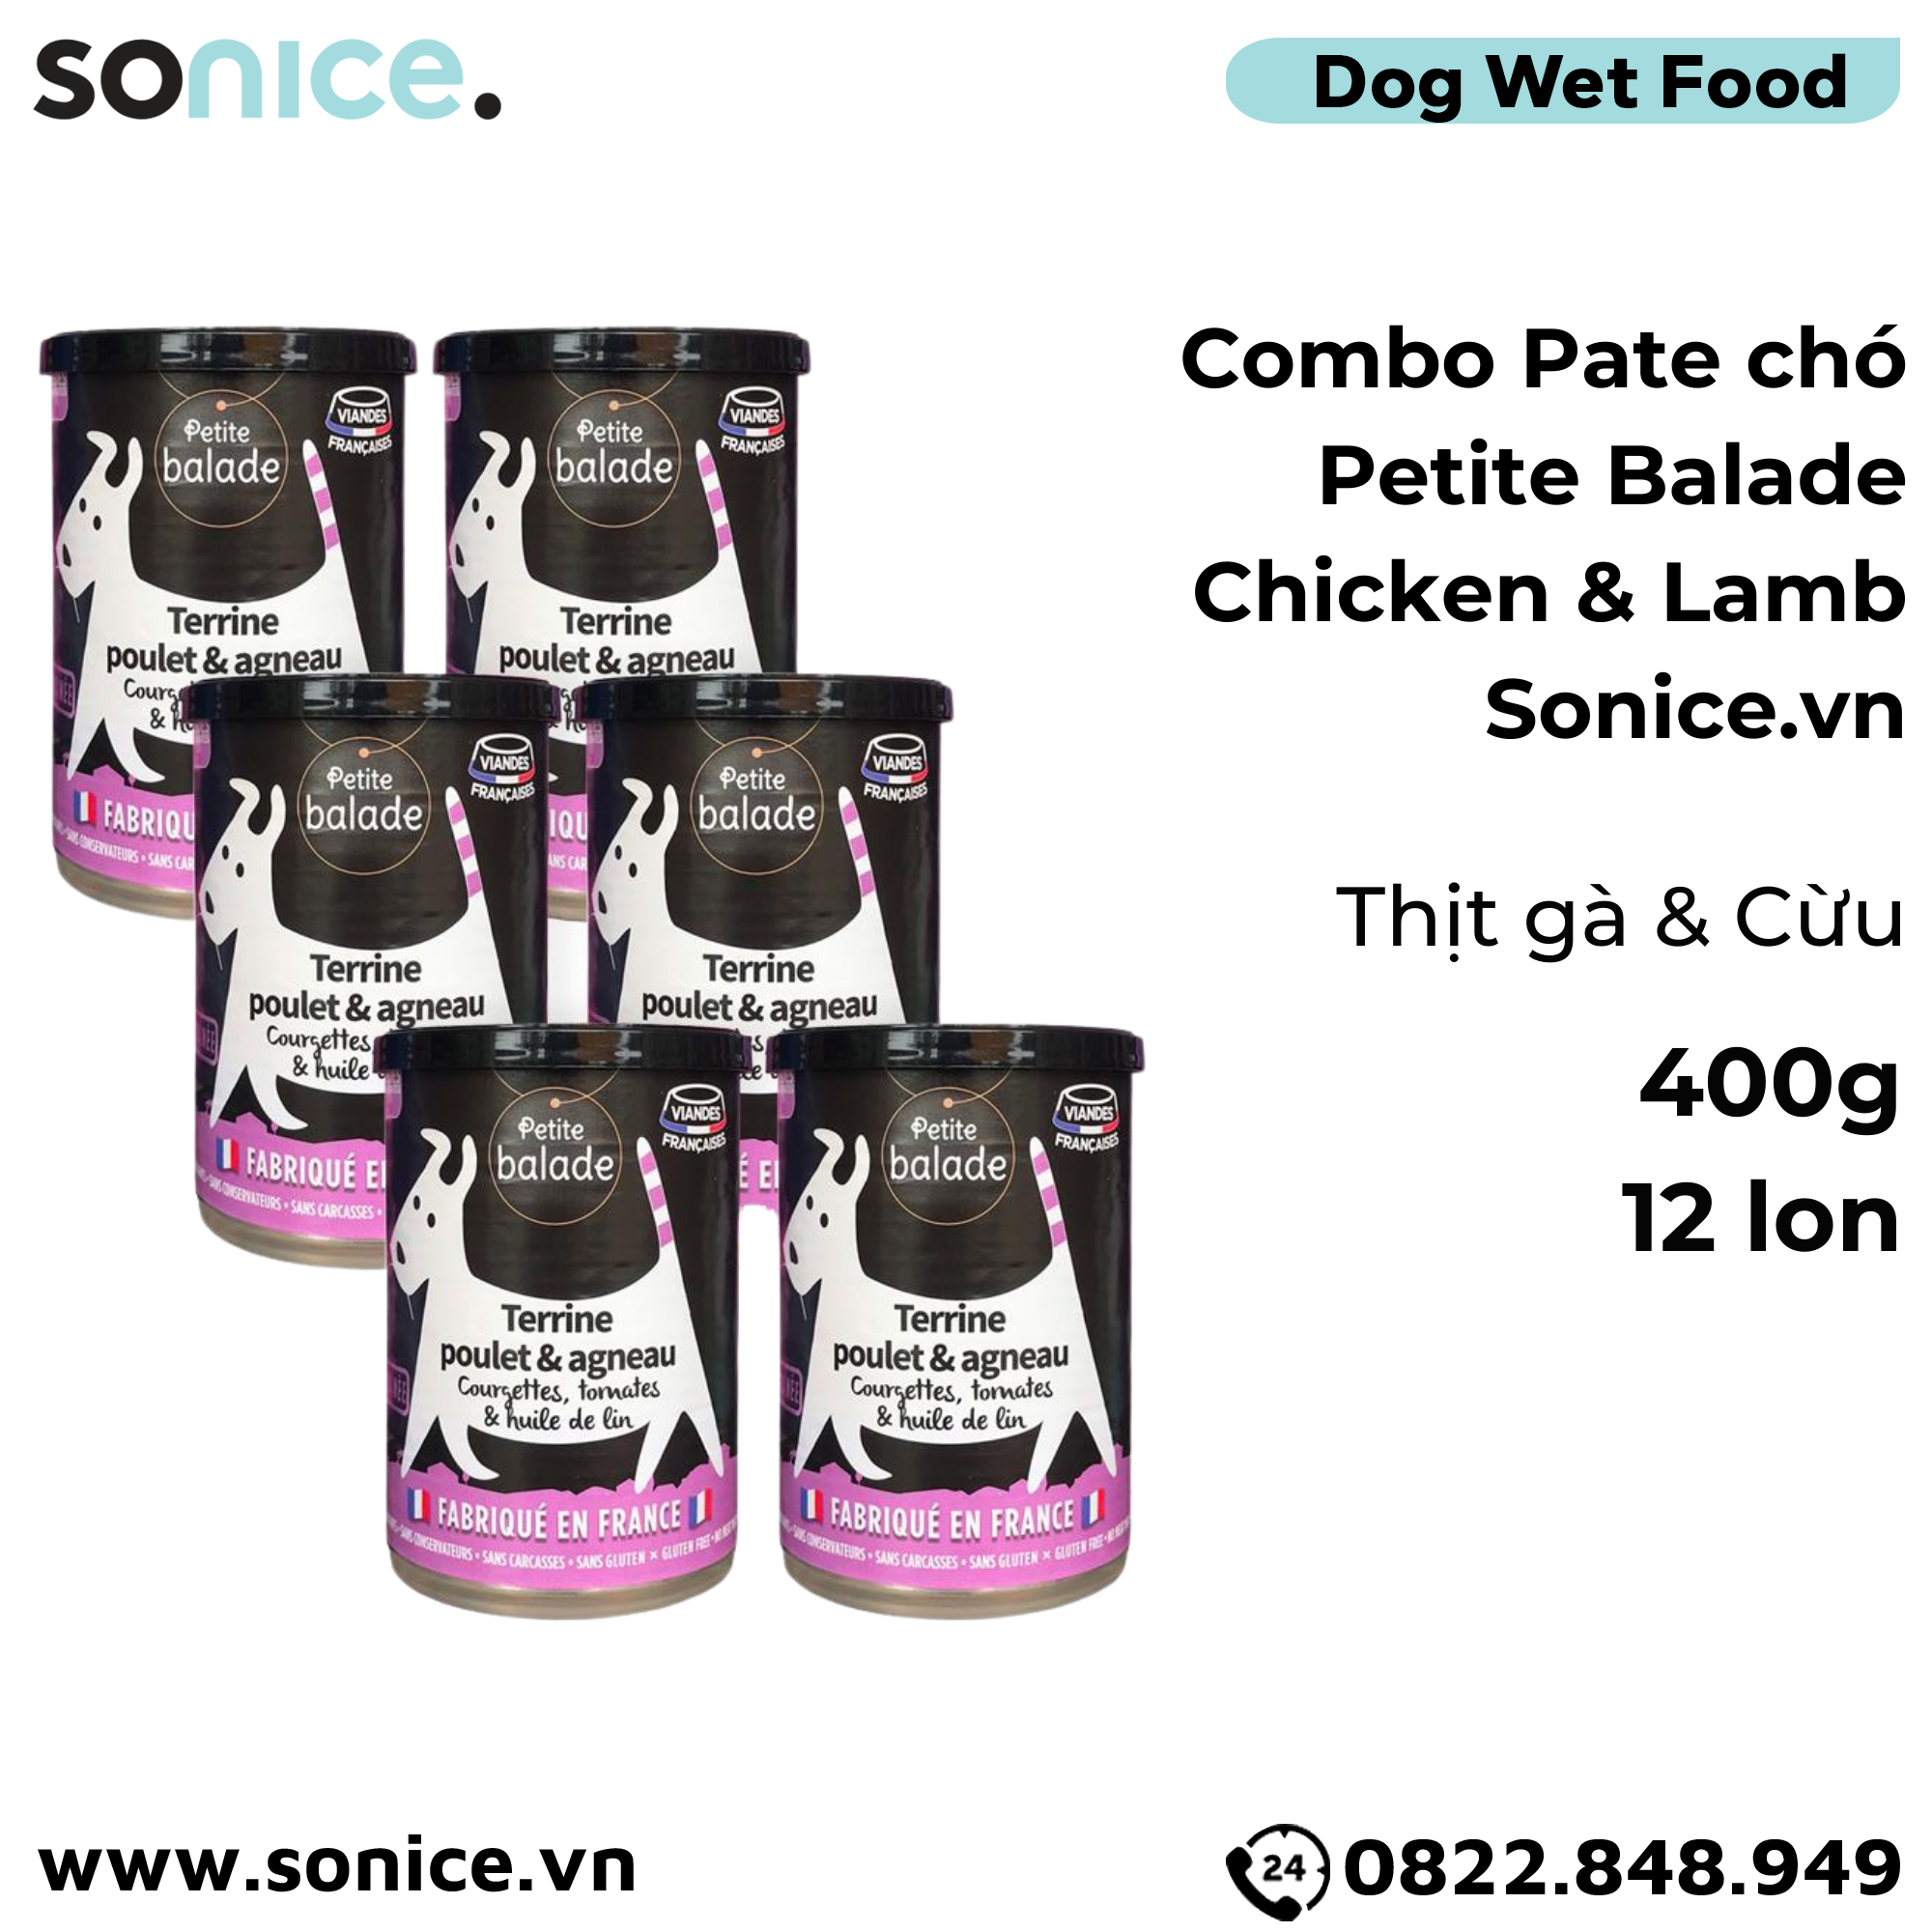  Combo Pate chó Petite Balade Chicken & Lamb 400g - 12 lon - Thịt gà và cừu SONICE. 